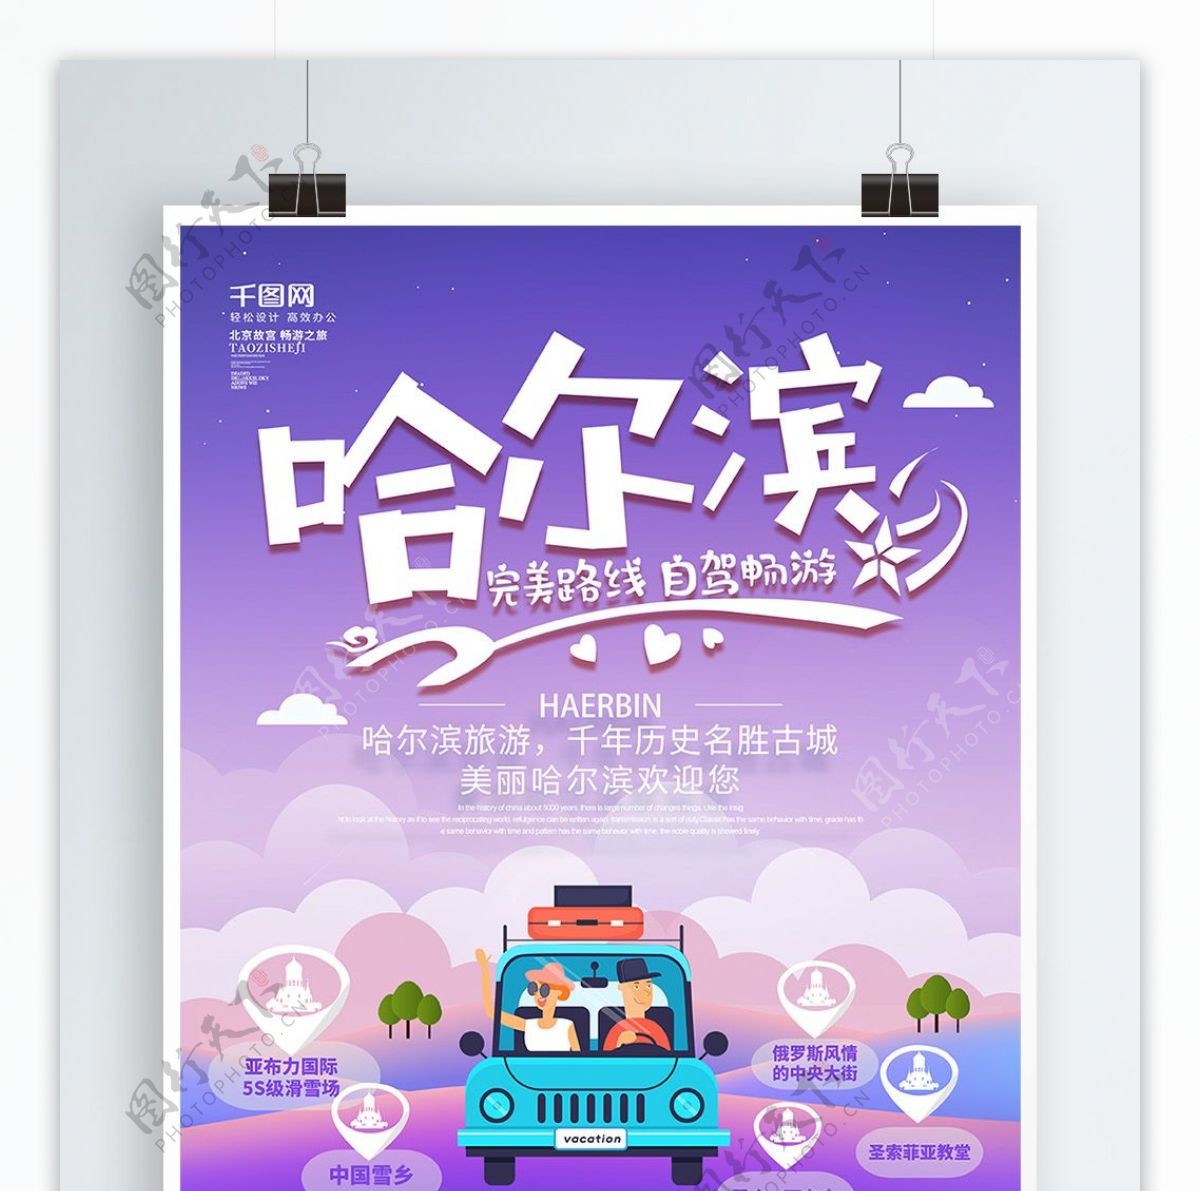 紫色手绘风创意哈尔滨自驾游旅游海报